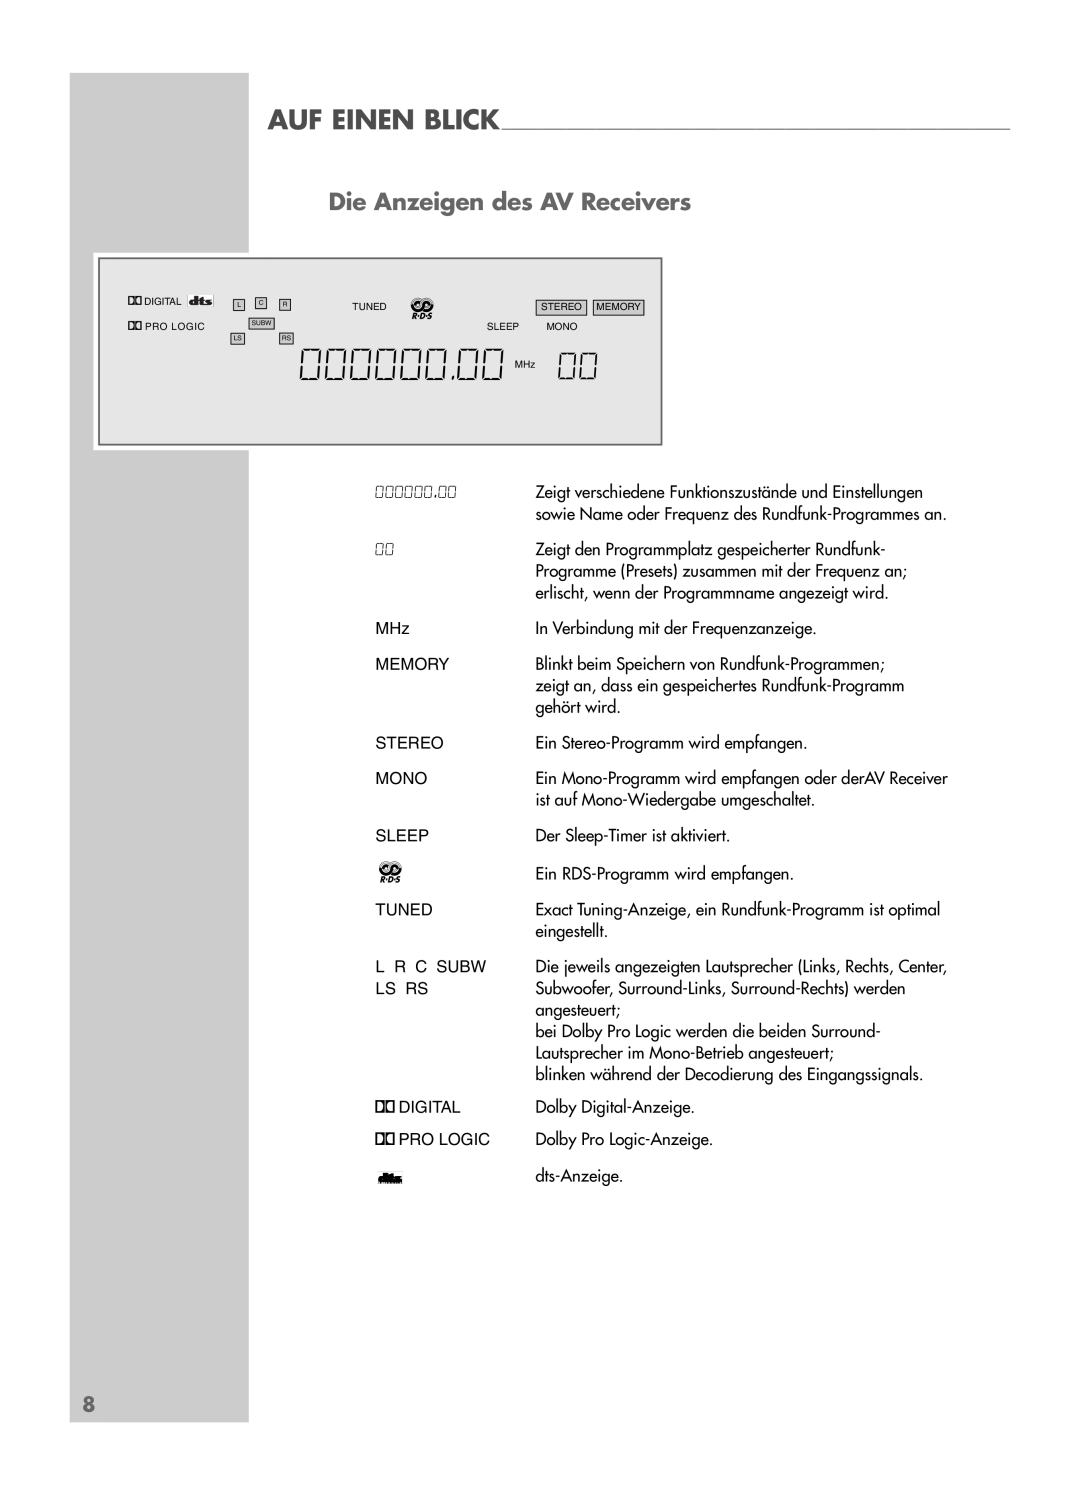 Grundig AVR 5200 DD manual Die Anzeigen des AV Receivers, 000000.00 MHz 